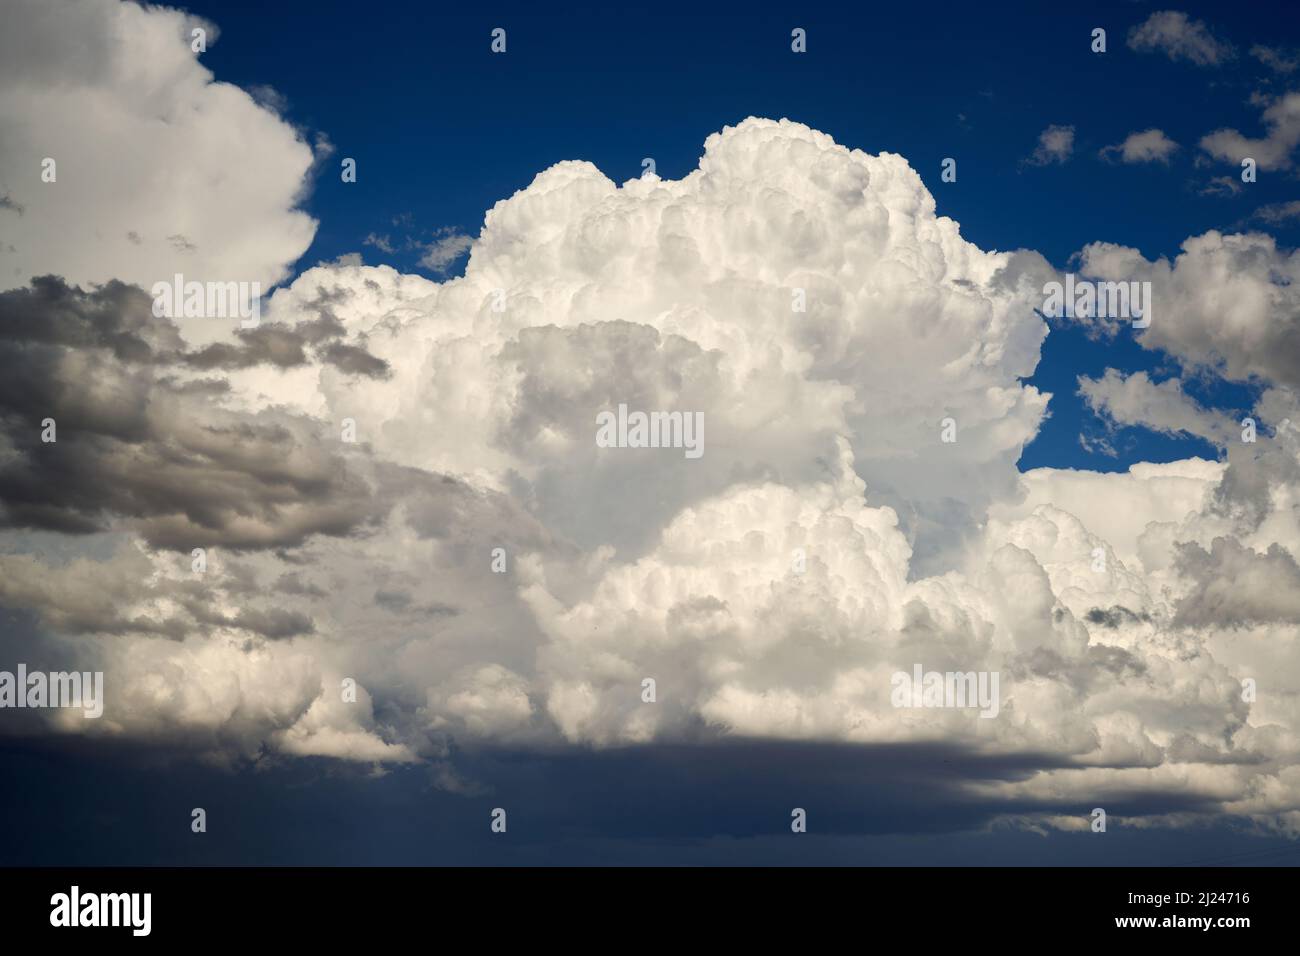 Les nuages Cumulus se construisent au bord d'un front d'orage. La lumière tardive de l'aternonn défiant leur beauté structurative. Banque D'Images